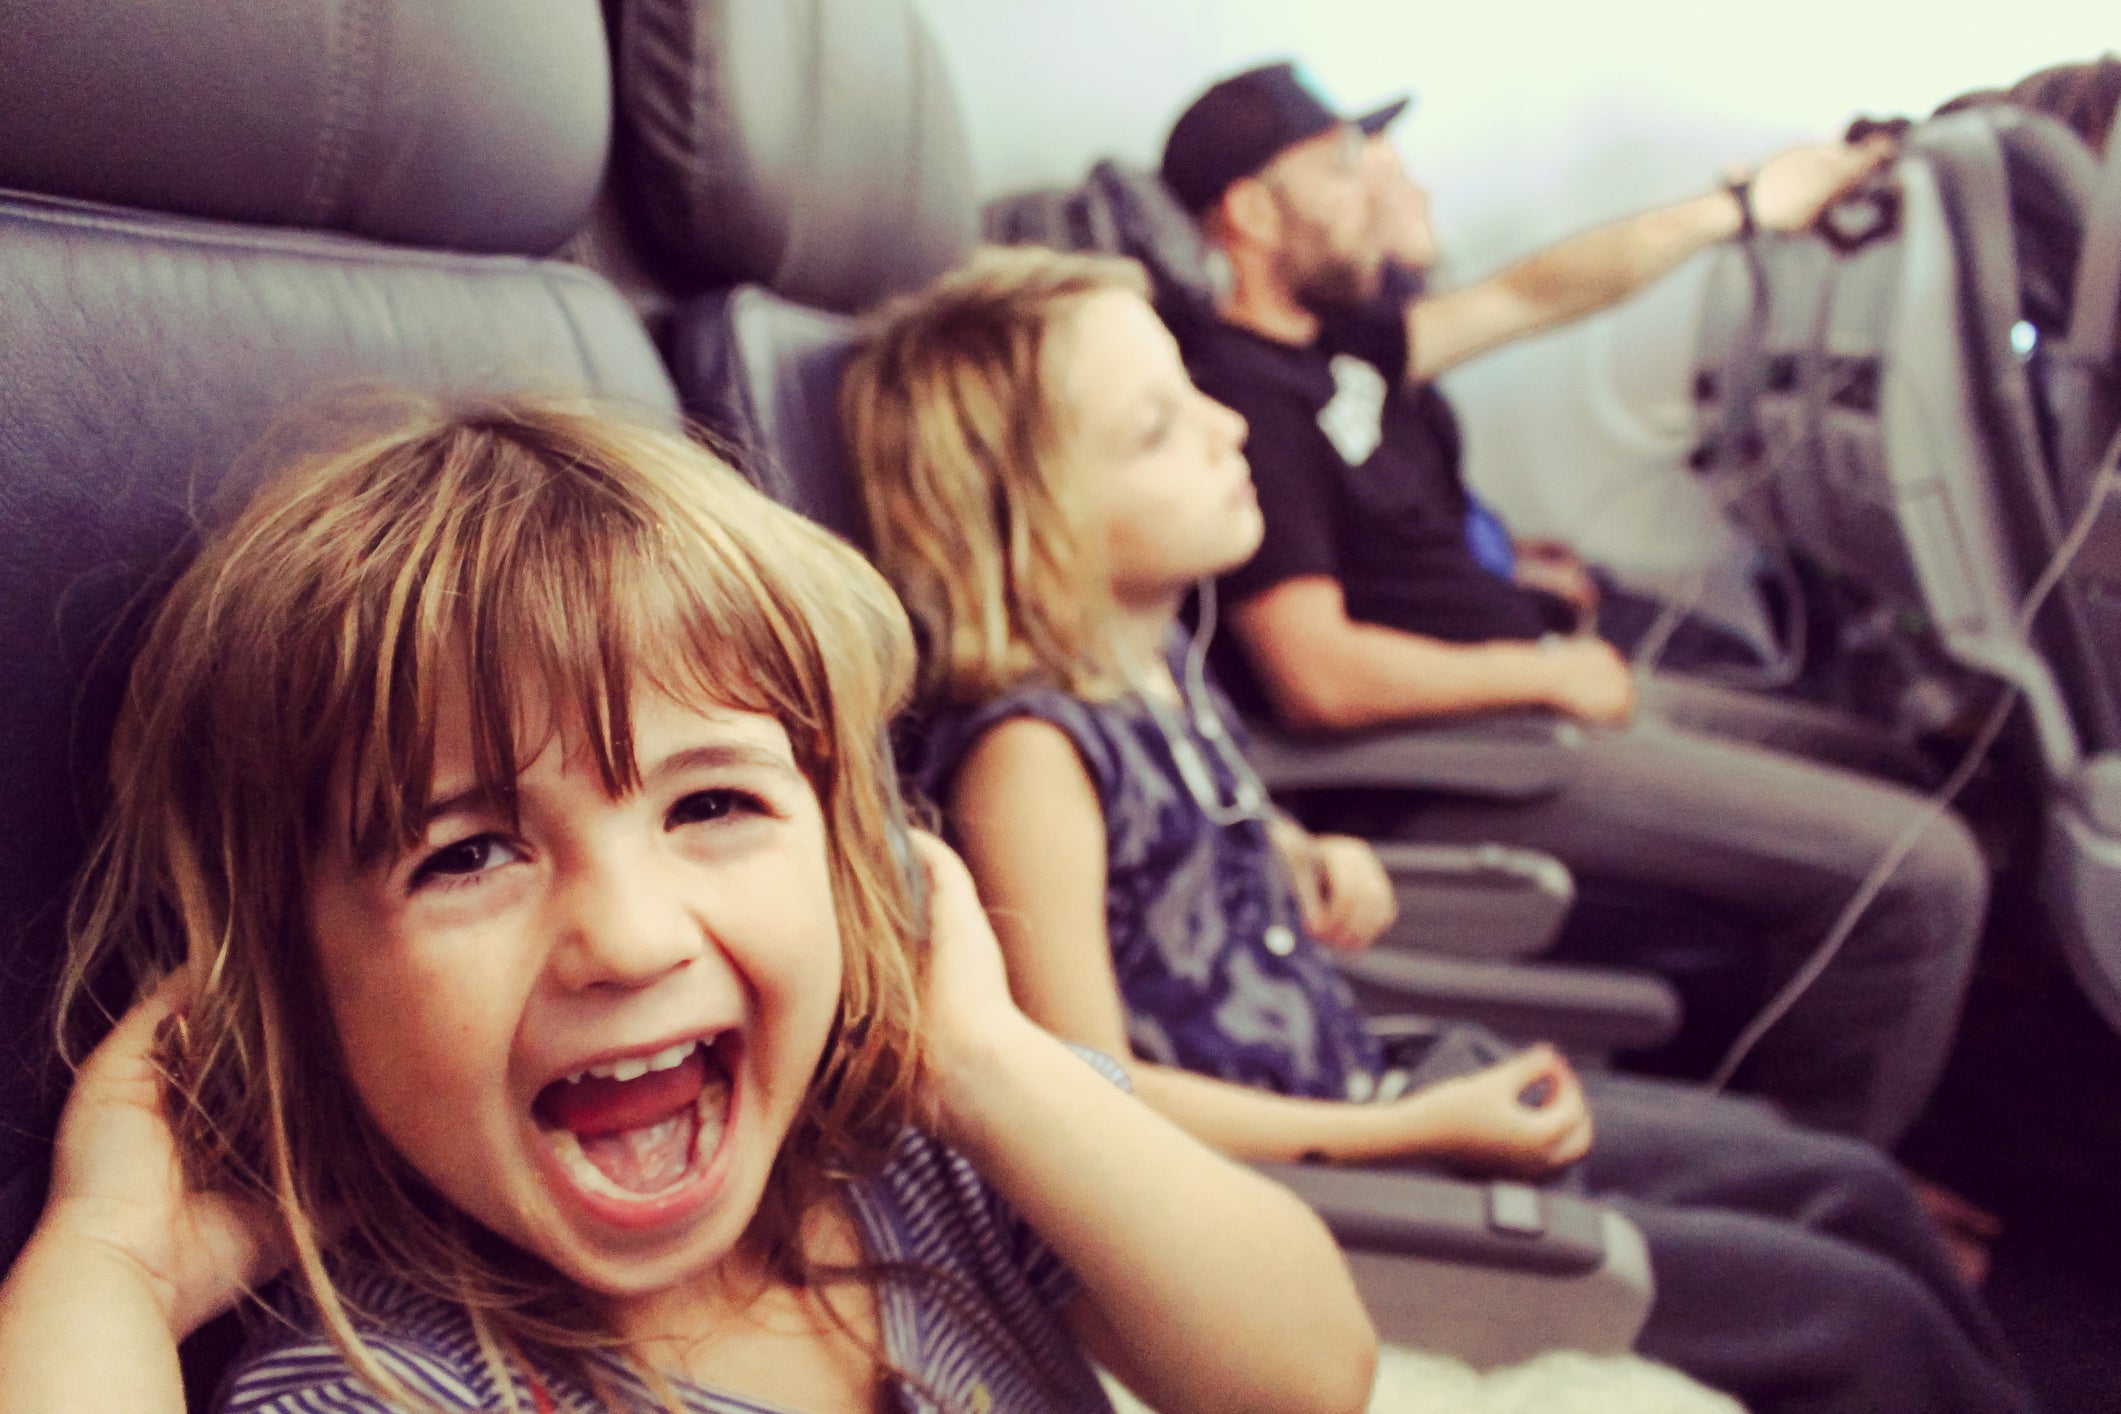 Toddler kid on plane